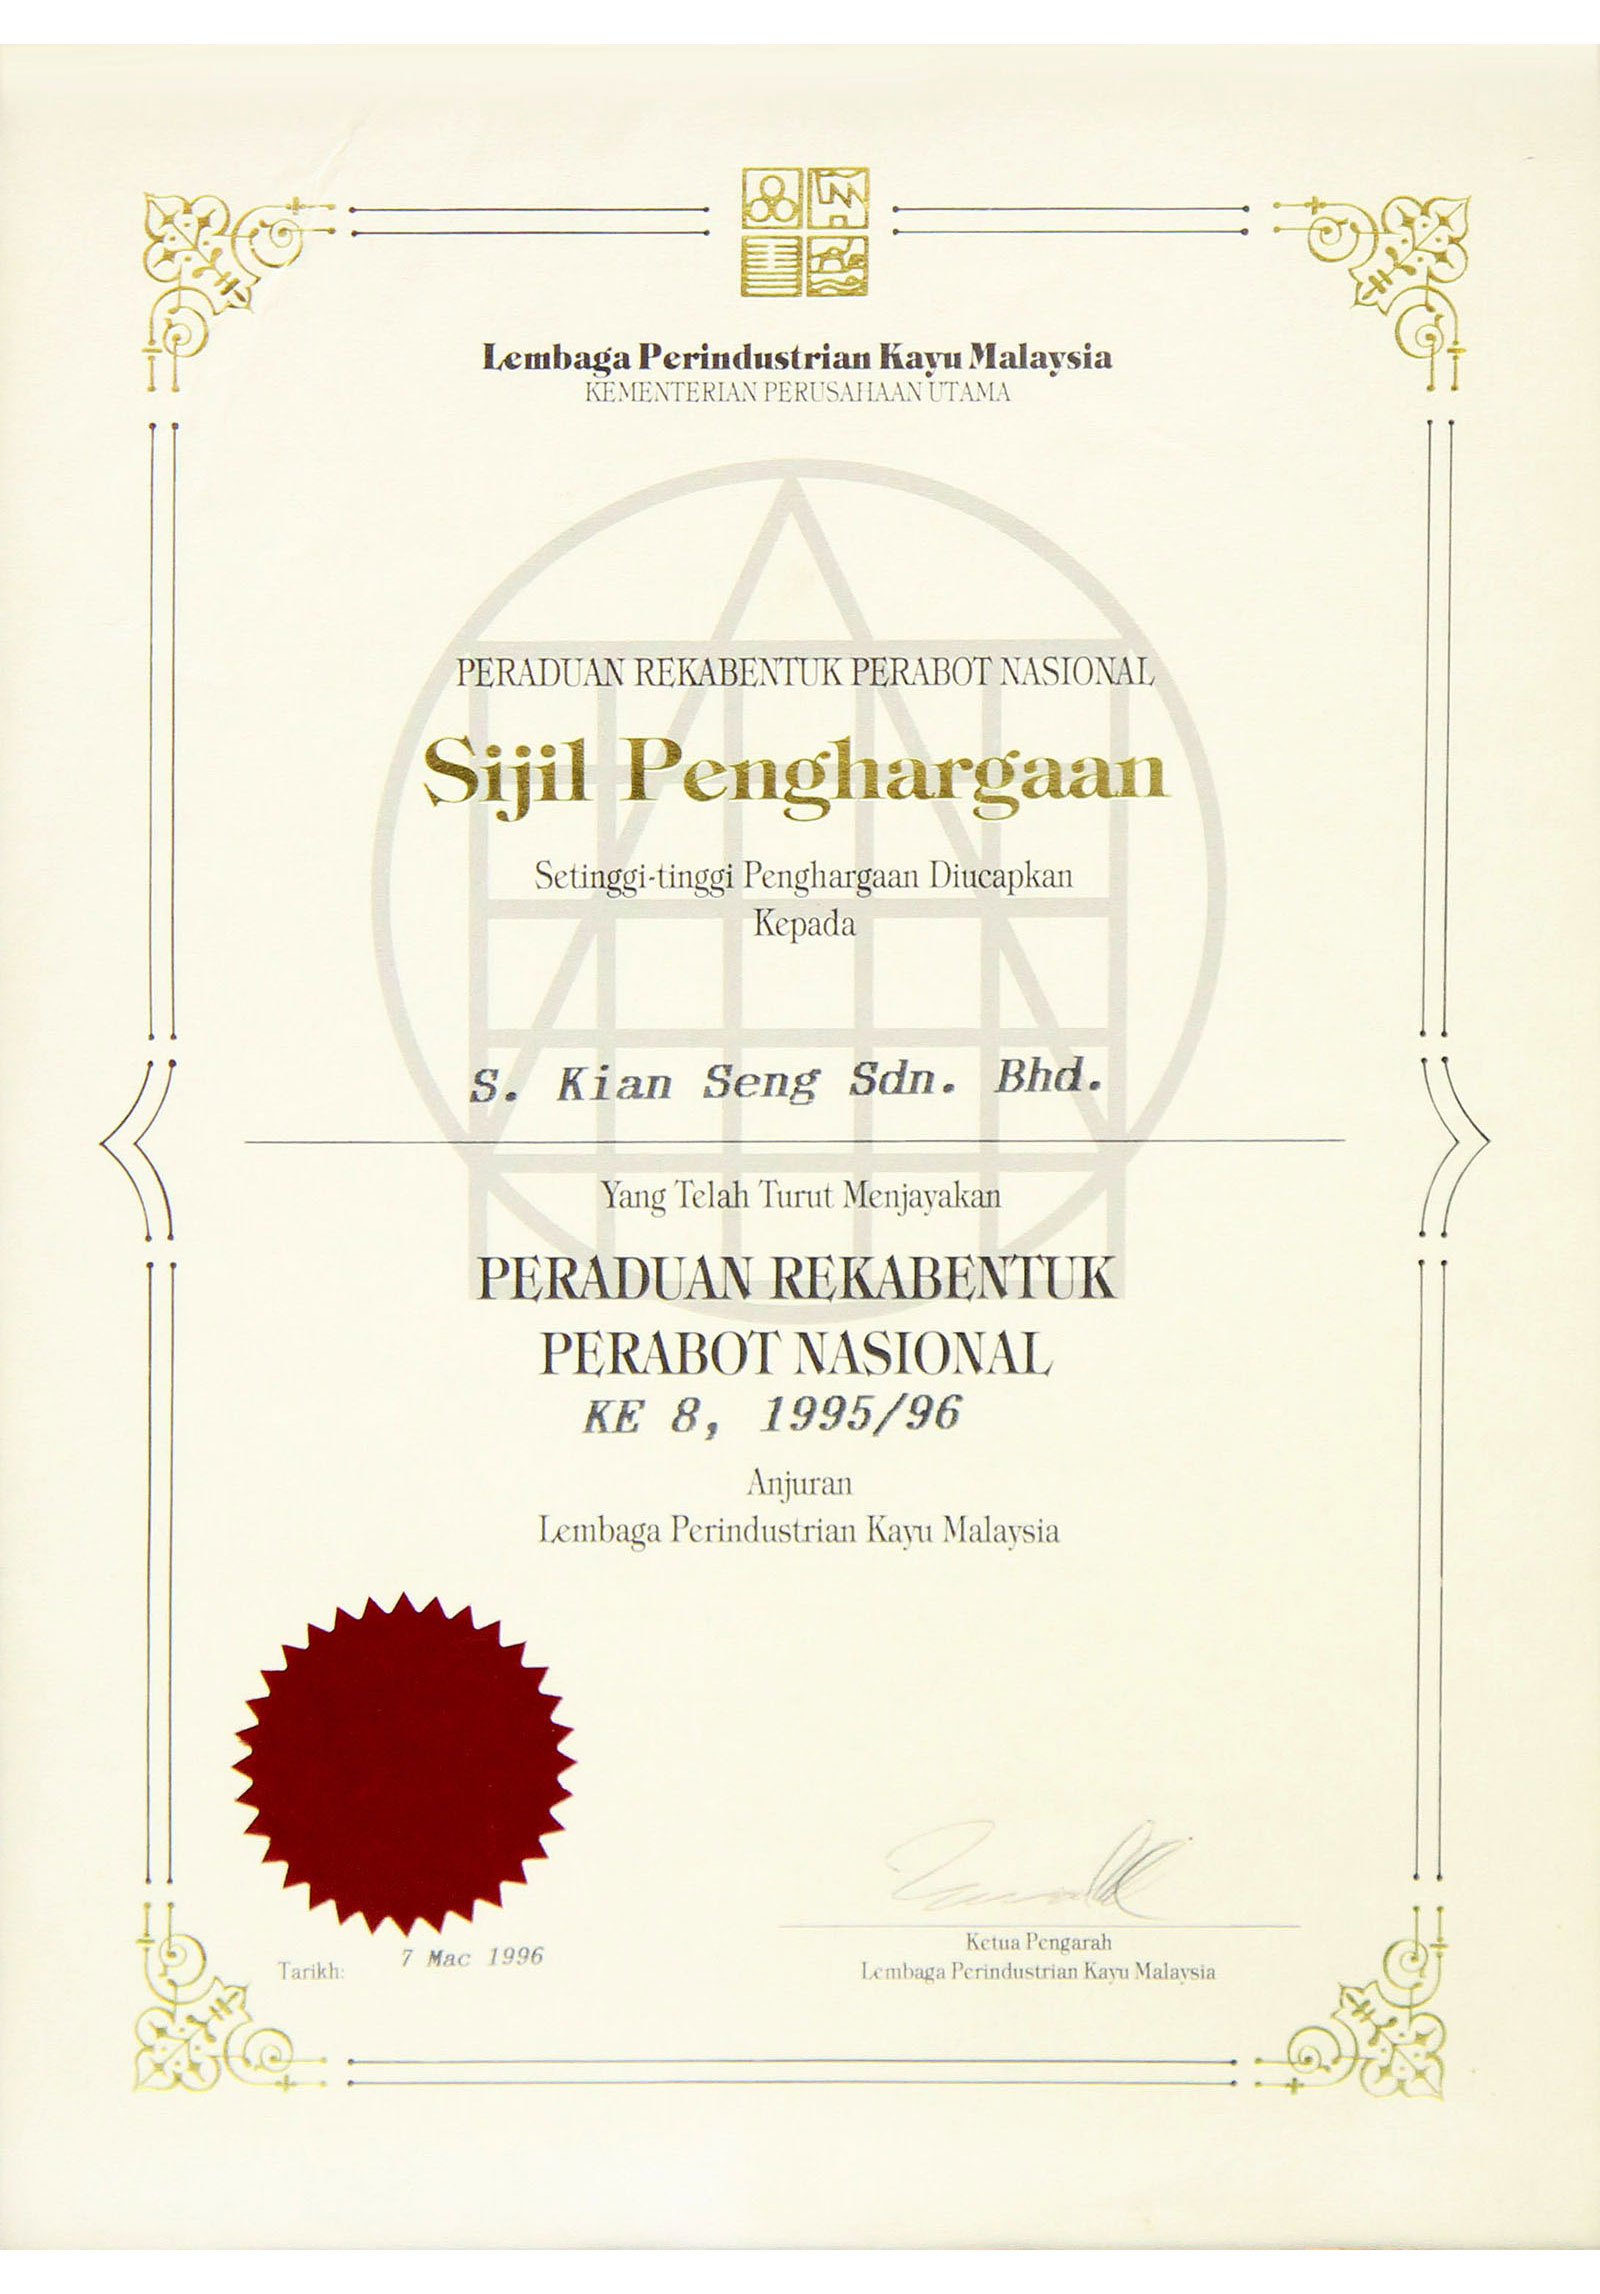 Sijil Penghargaan, Peraduan Rekabentuk Perabot Nasional KE8 1995/96